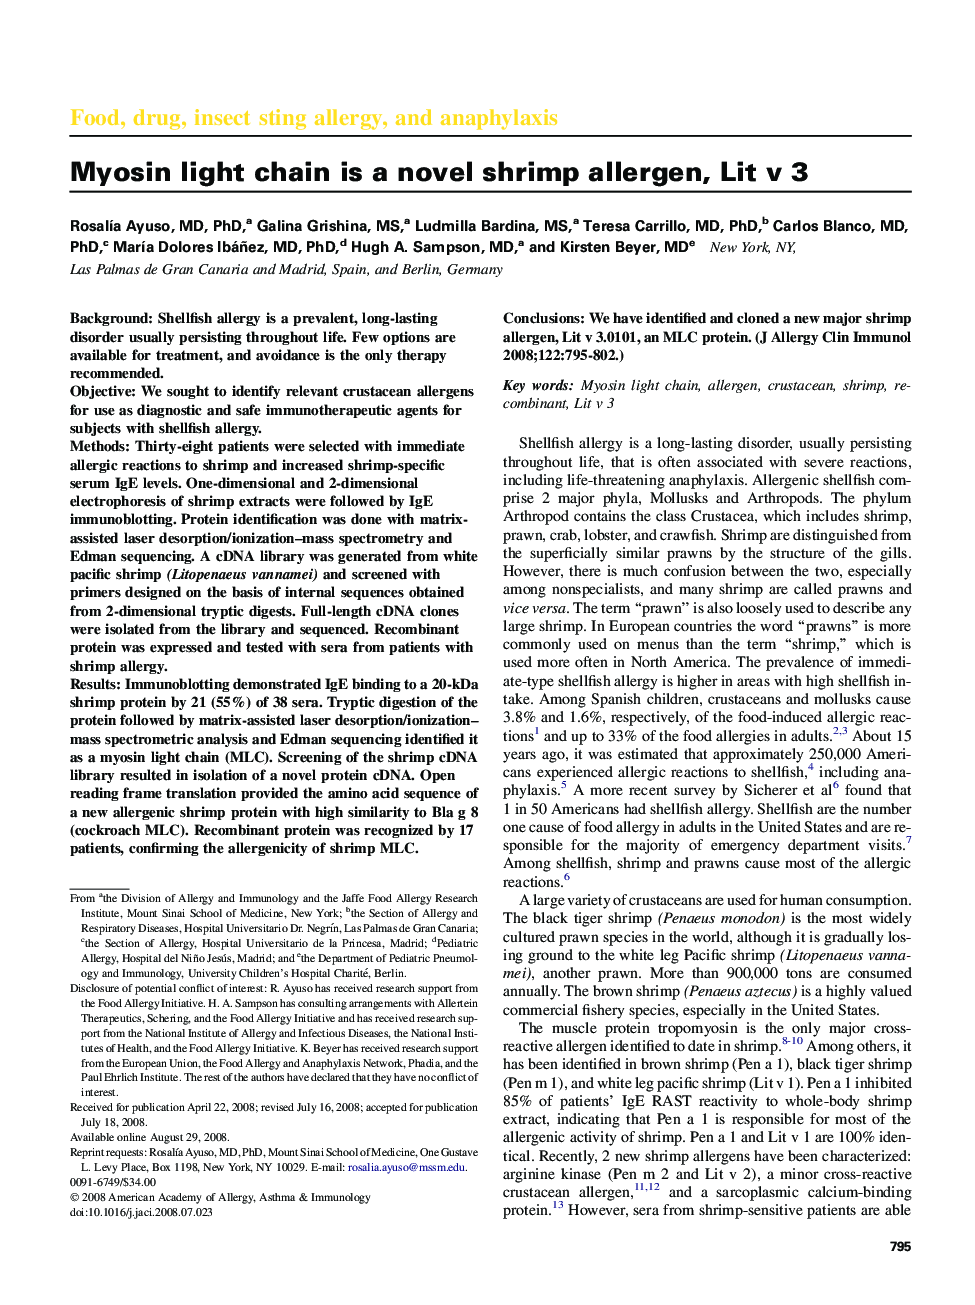 Myosin light chain is a novel shrimp allergen, Lit v 3 